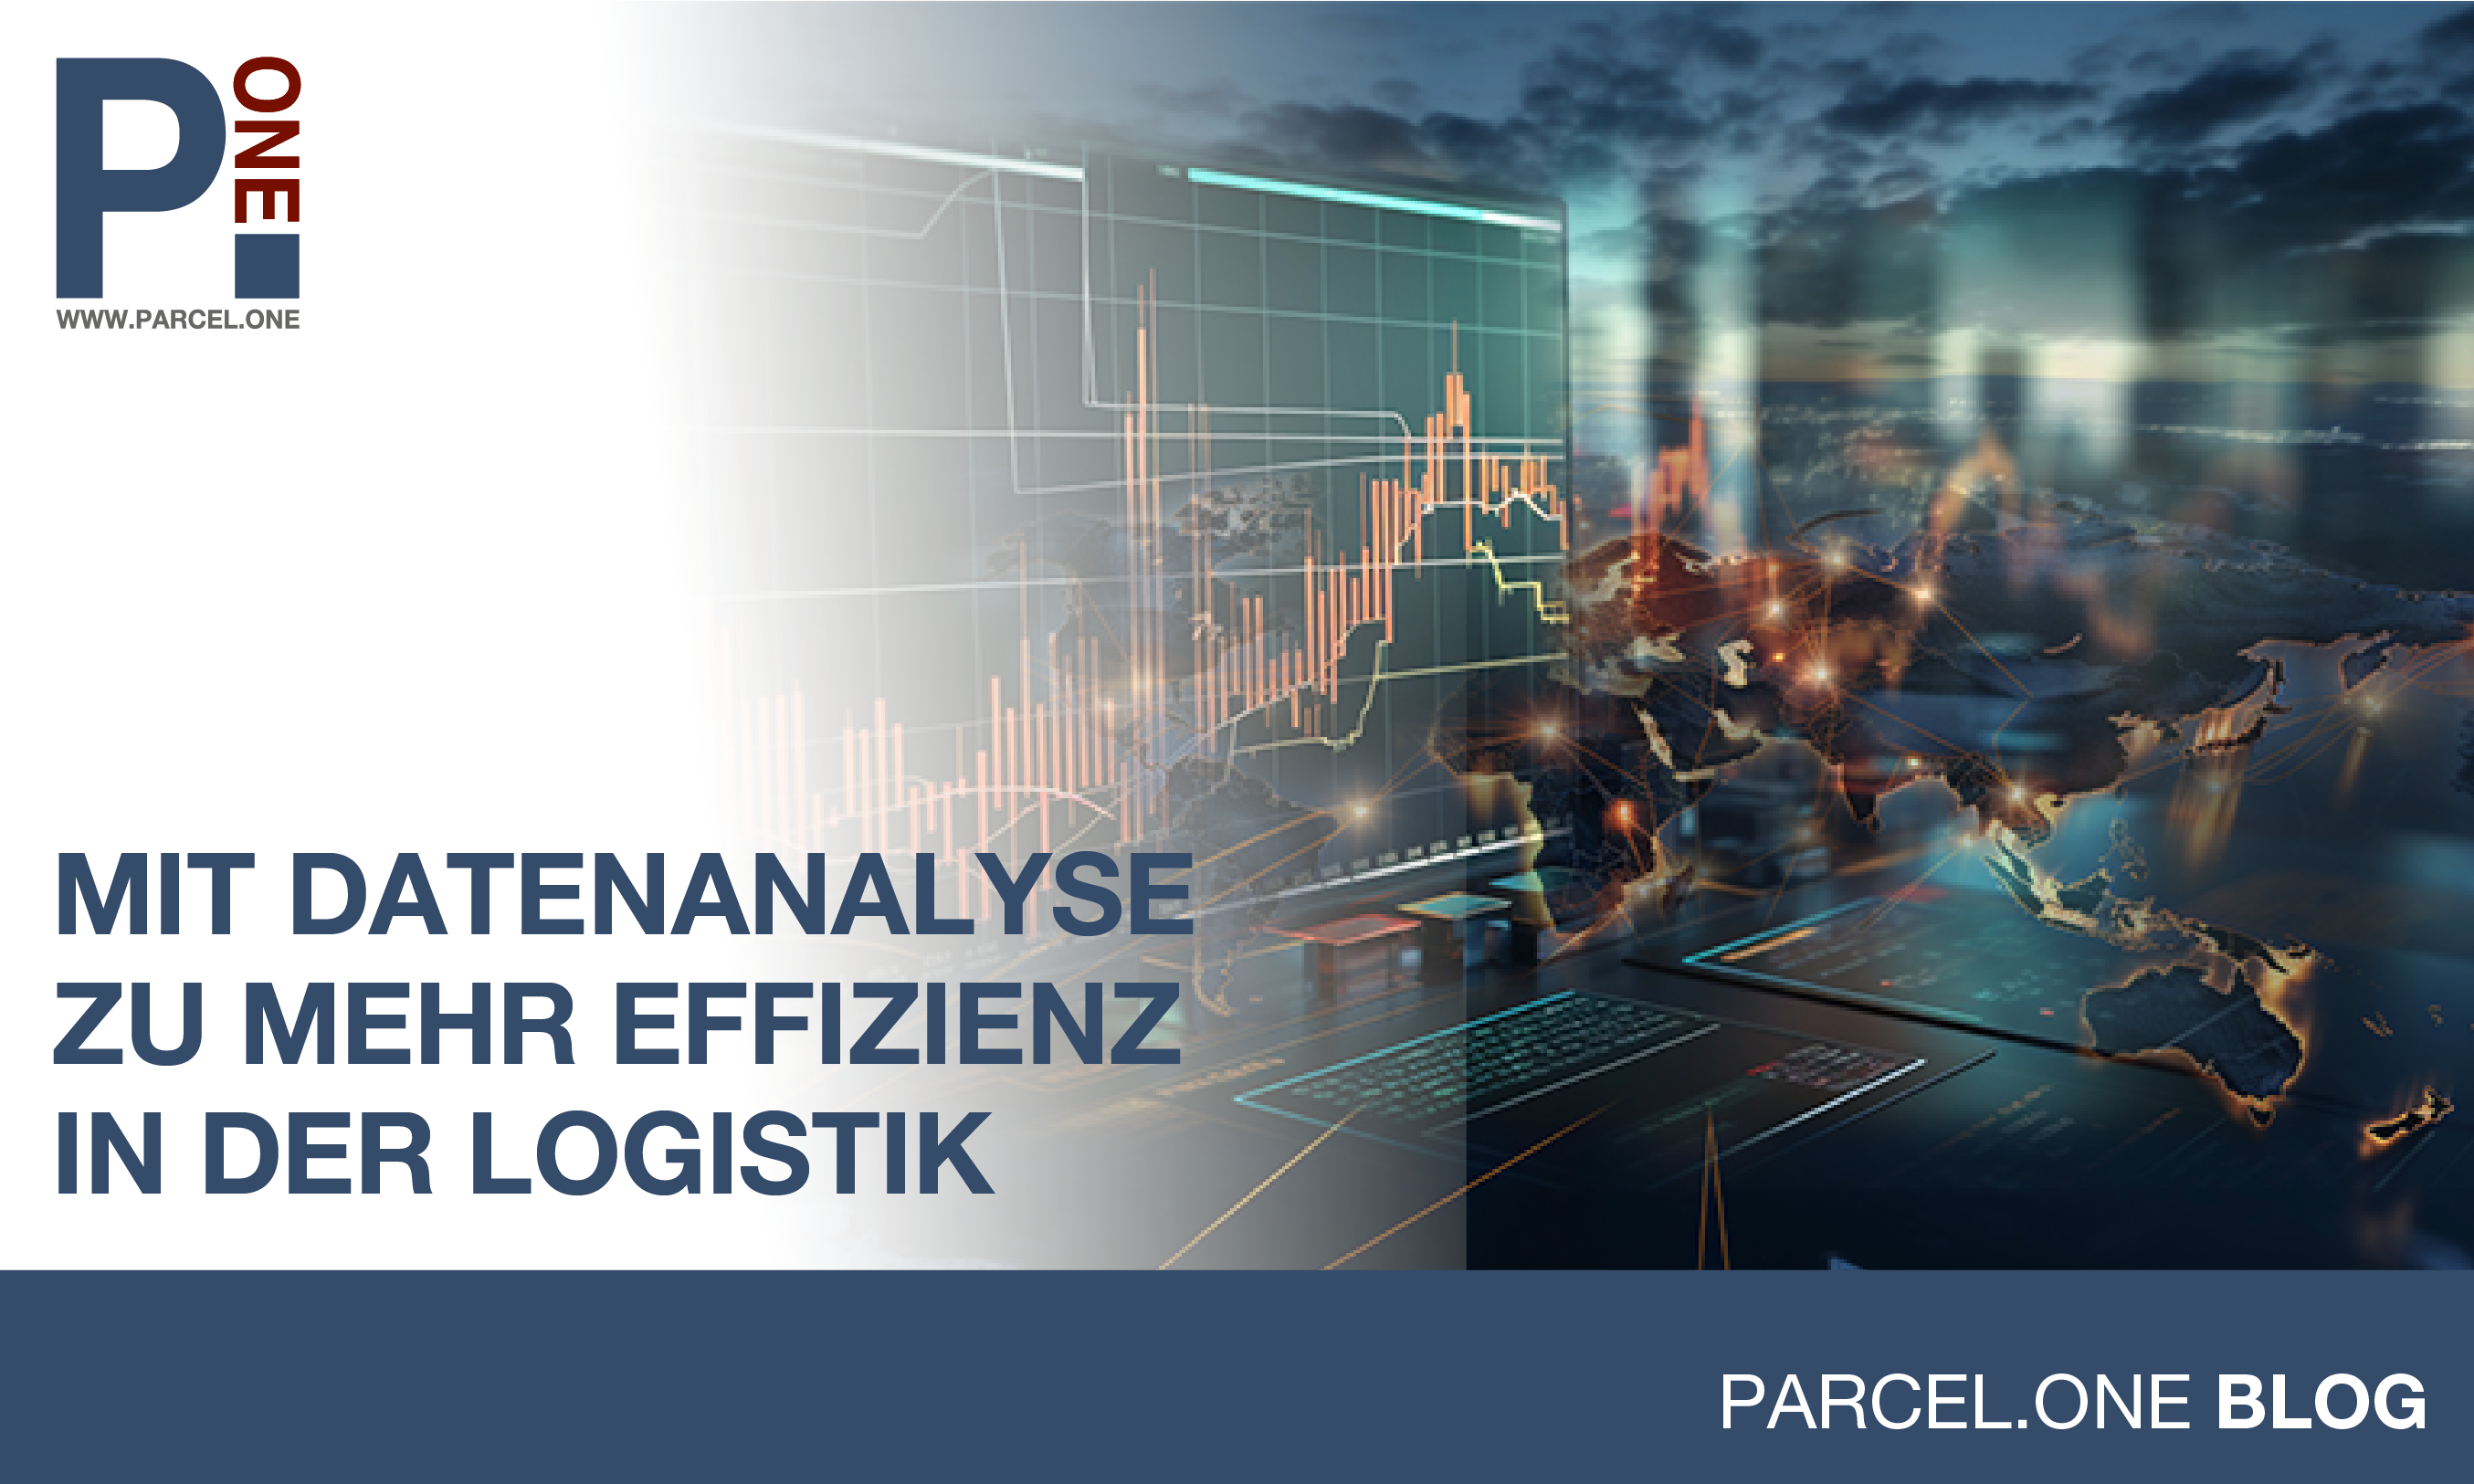 Mit Datenanalyse zu mehr Effizienz in der Logistik